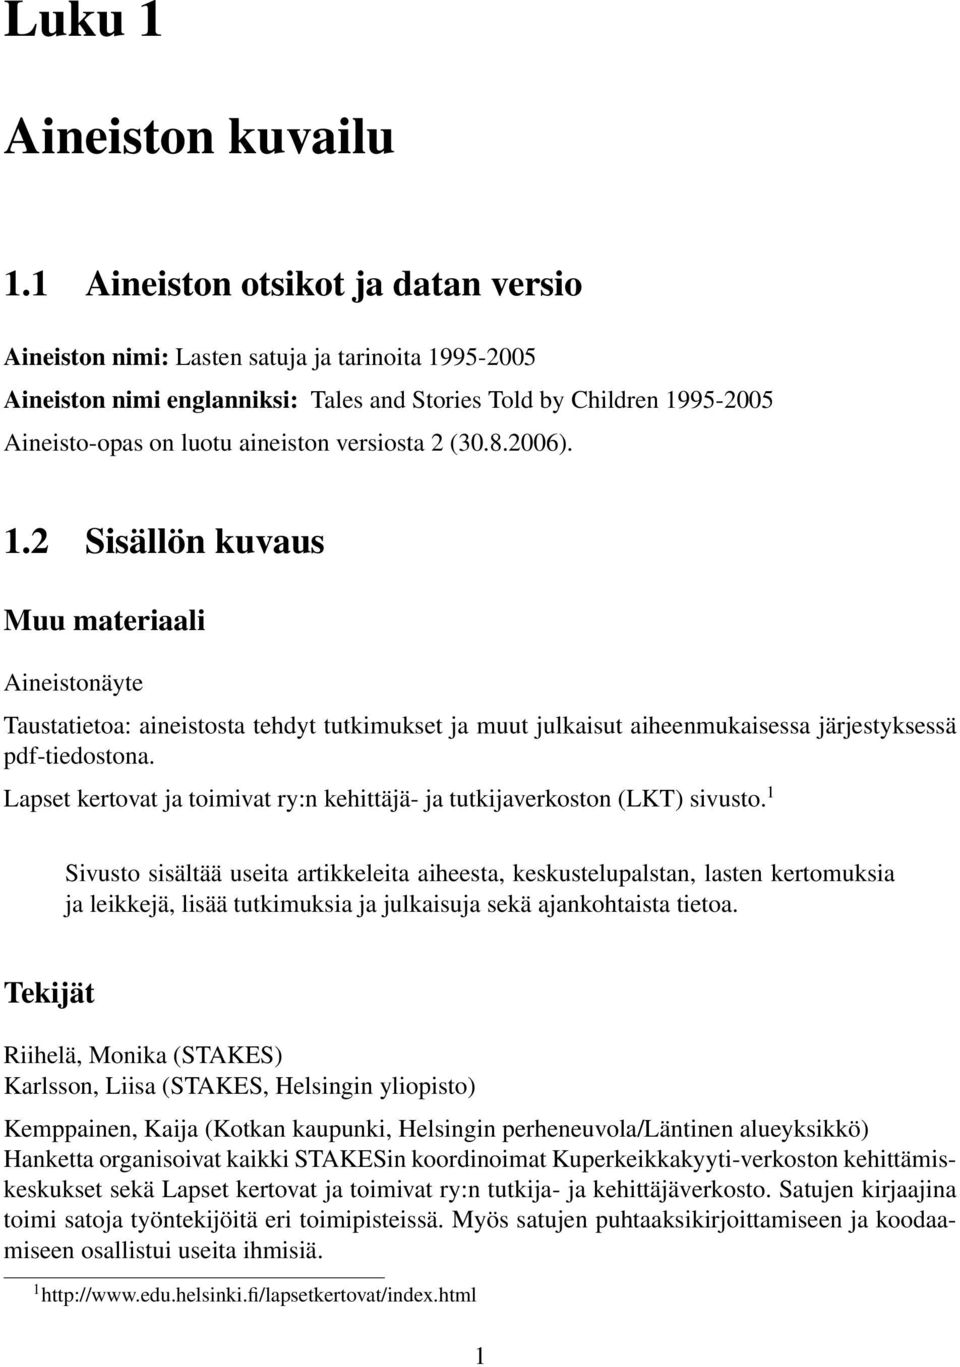 versiosta 2 (30.8.2006). 1.2 Sisällön kuvaus Muu materiaali Aineistonäyte Taustatietoa: aineistosta tehdyt tutkimukset ja muut julkaisut aiheenmukaisessa järjestyksessä pdf-tiedostona.